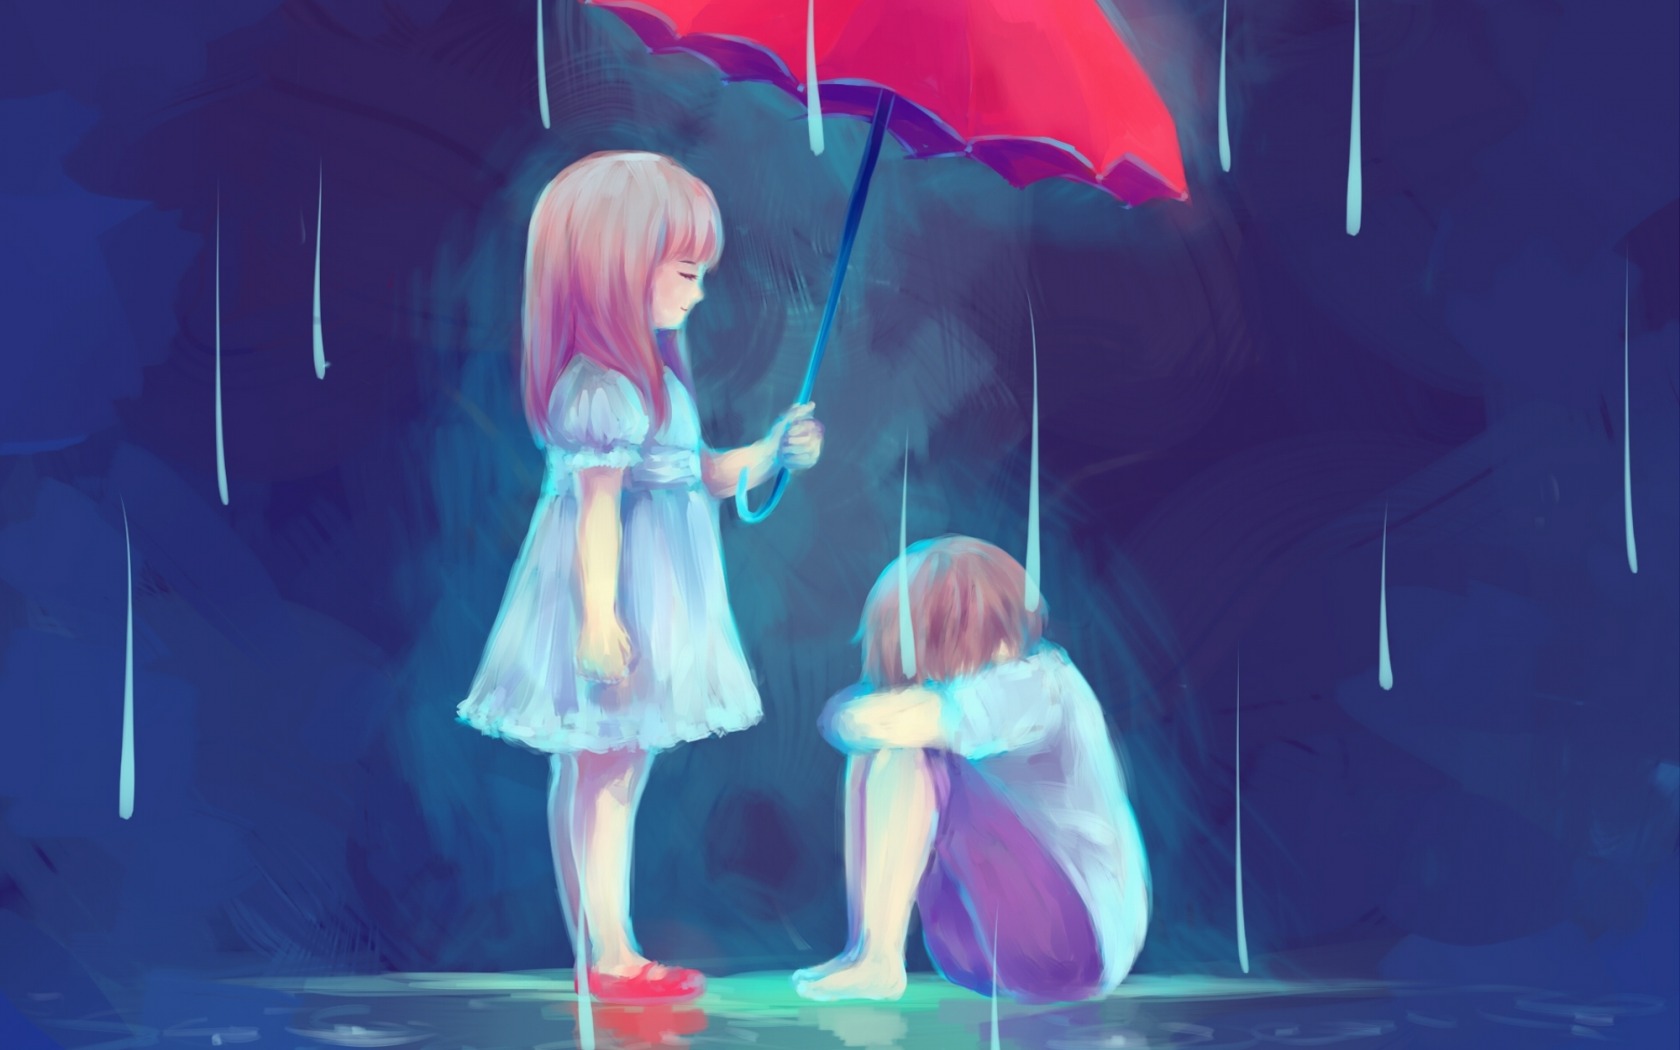 love, colors, artistic, rain, umbrella, sad lock screen backgrounds